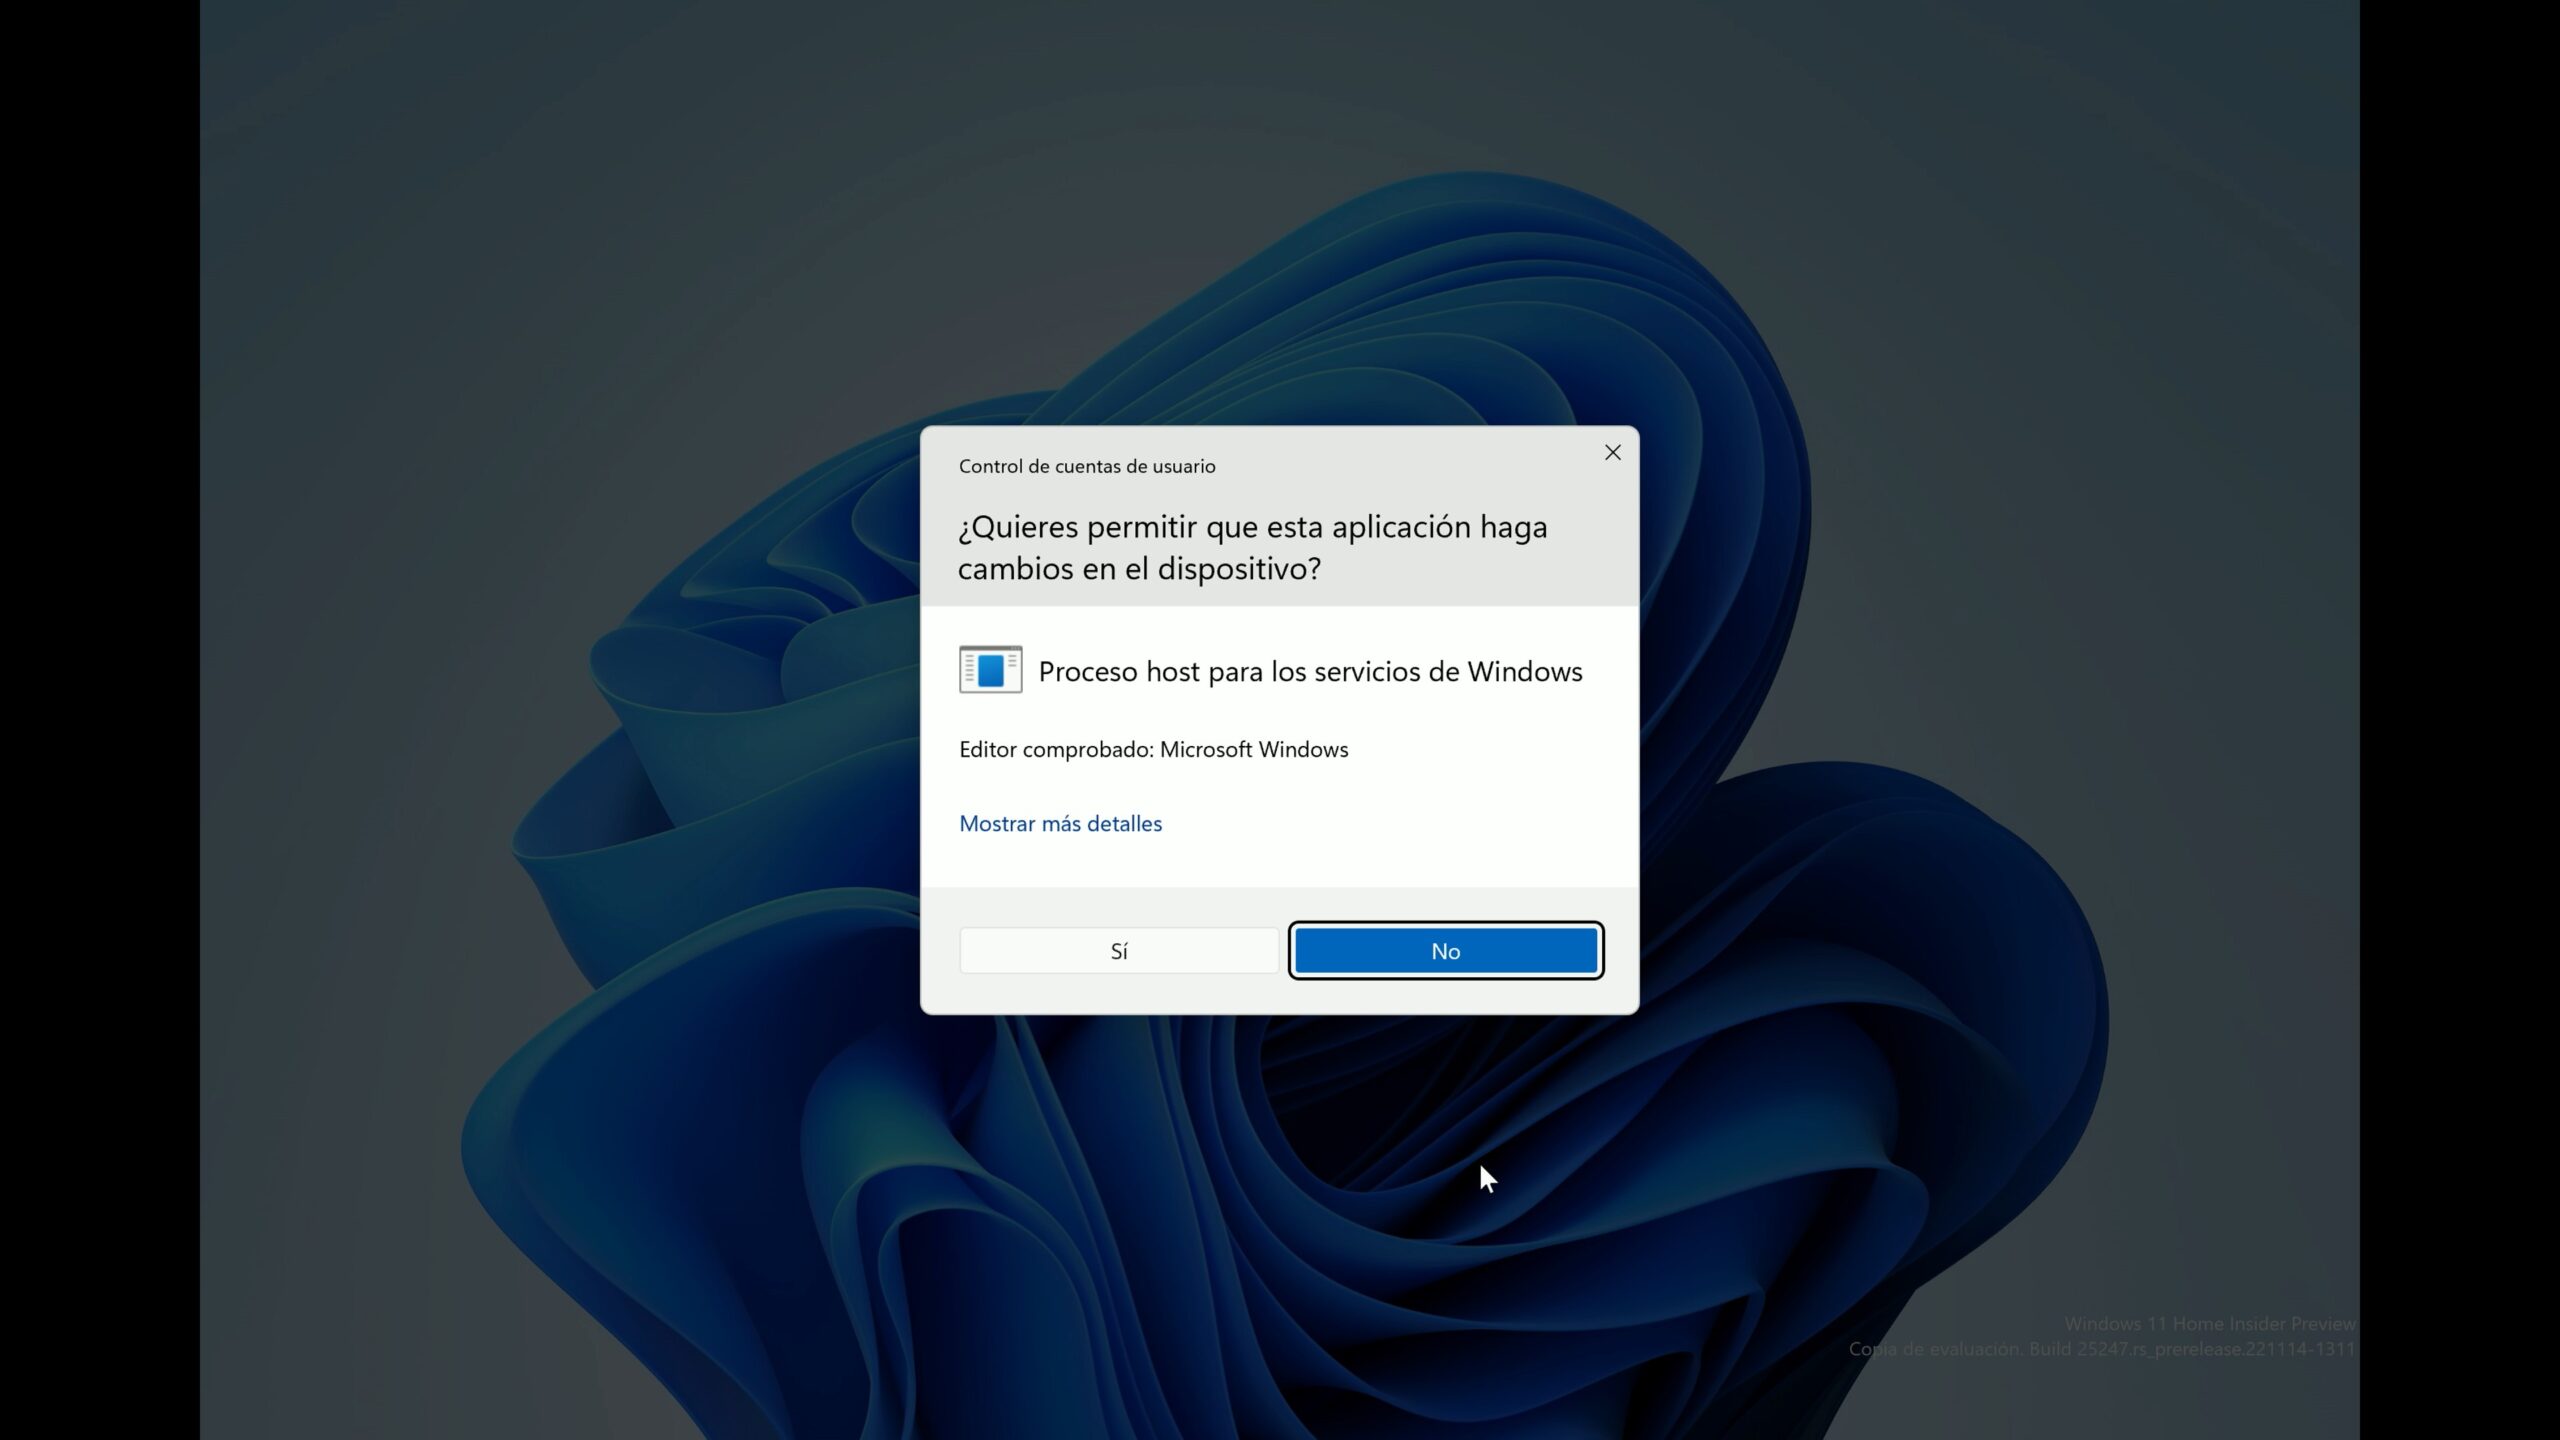 Captura del Control de cuentas de usuario solicitando elevación para el Proceso host para los servicios de Windows